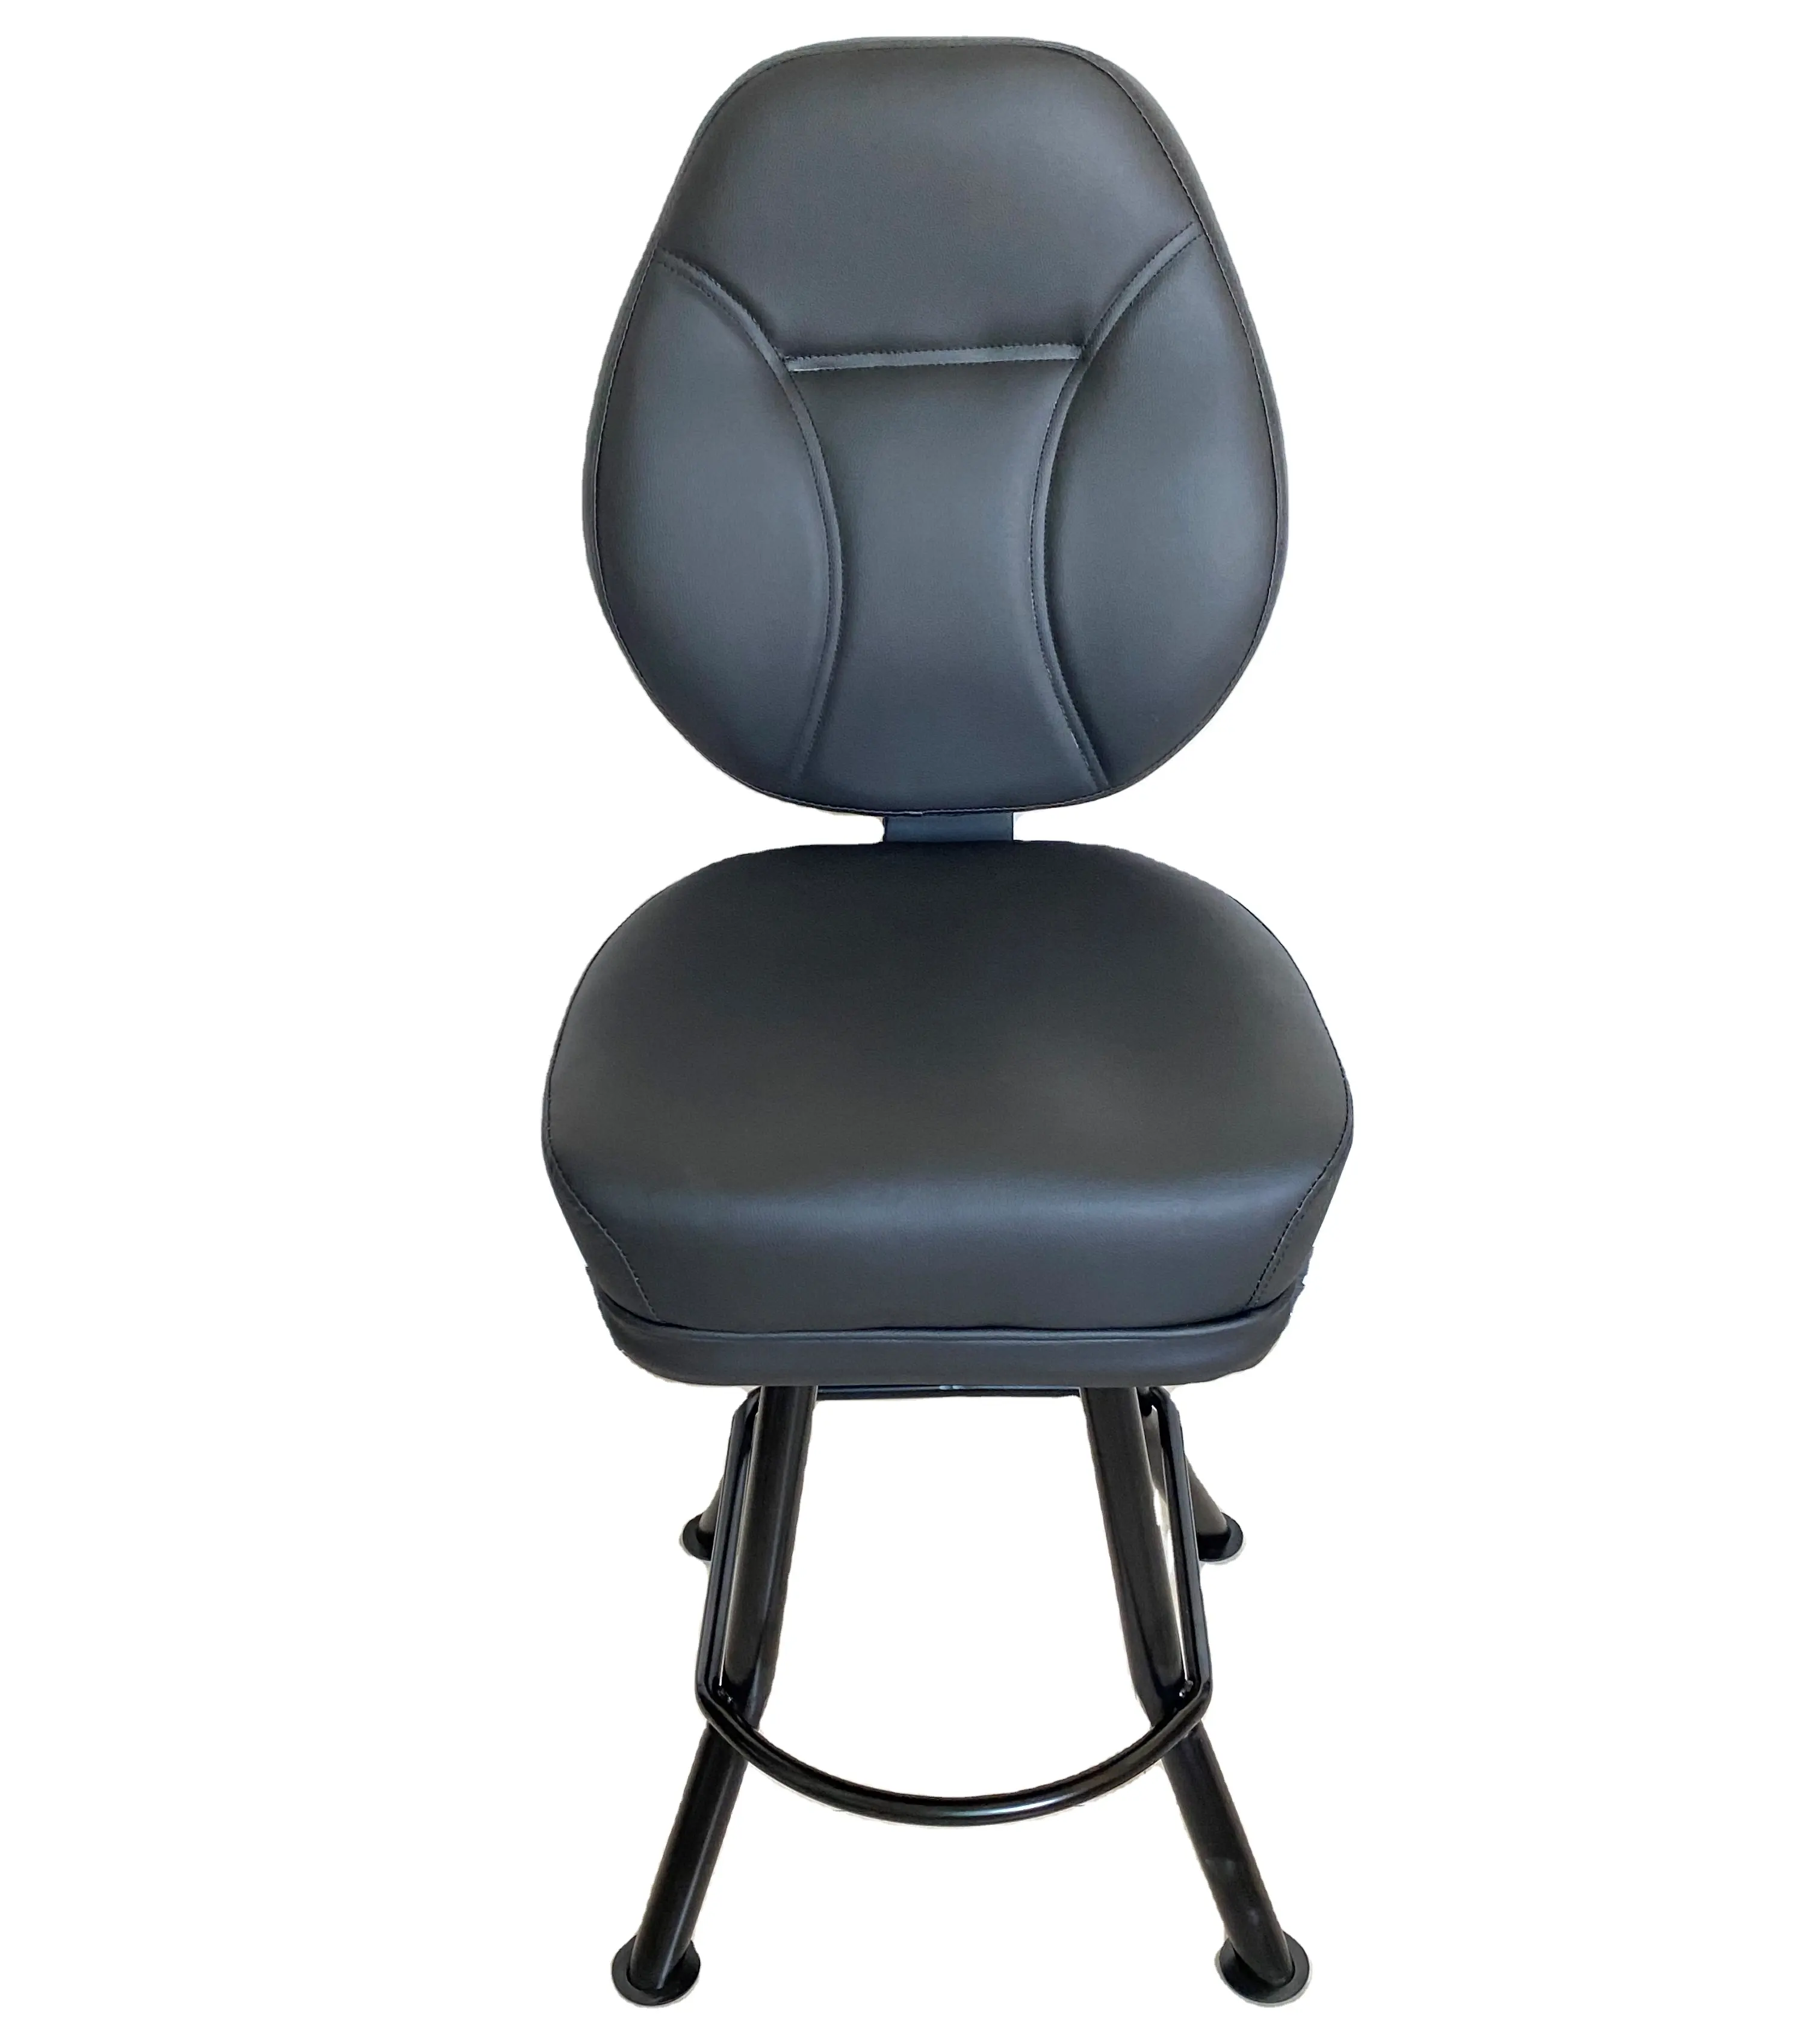 180 회전 자동 반환 슬롯 좌석 의자 스테인레스 스틸 패브릭 포커 의자 블랙 고정 다리 카지노 의자